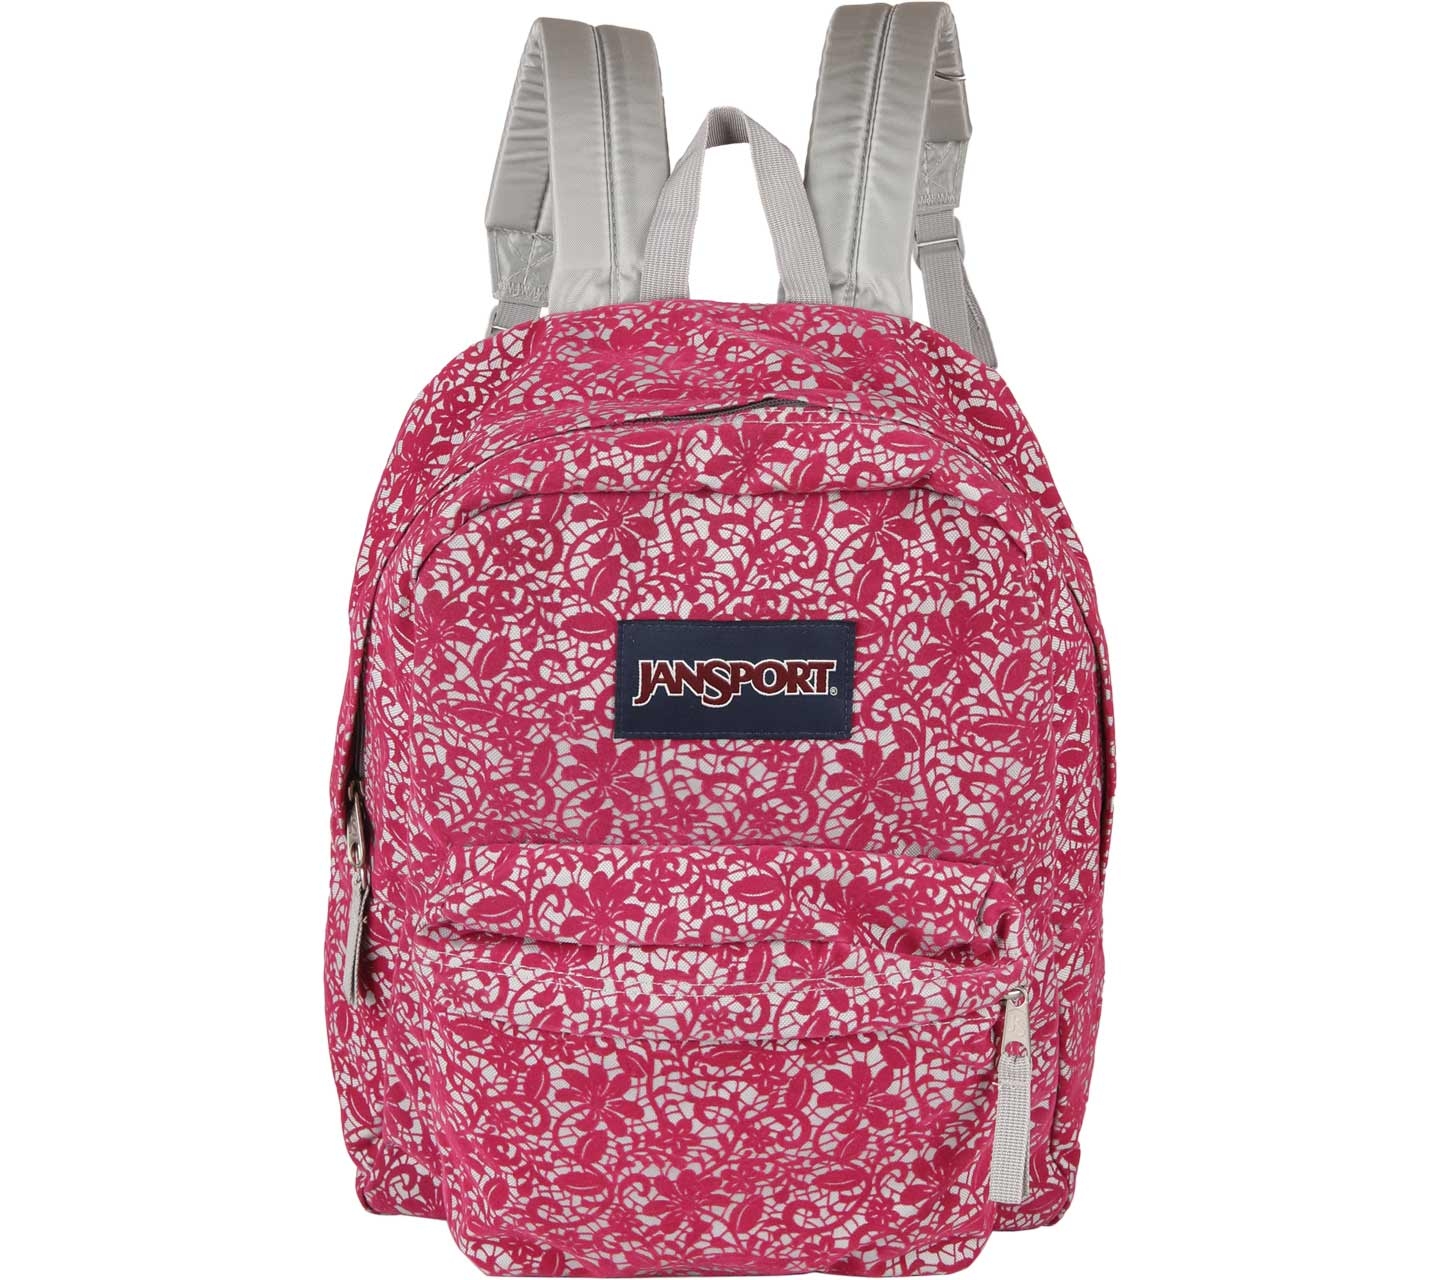 Jansport Pink Floral Backpack